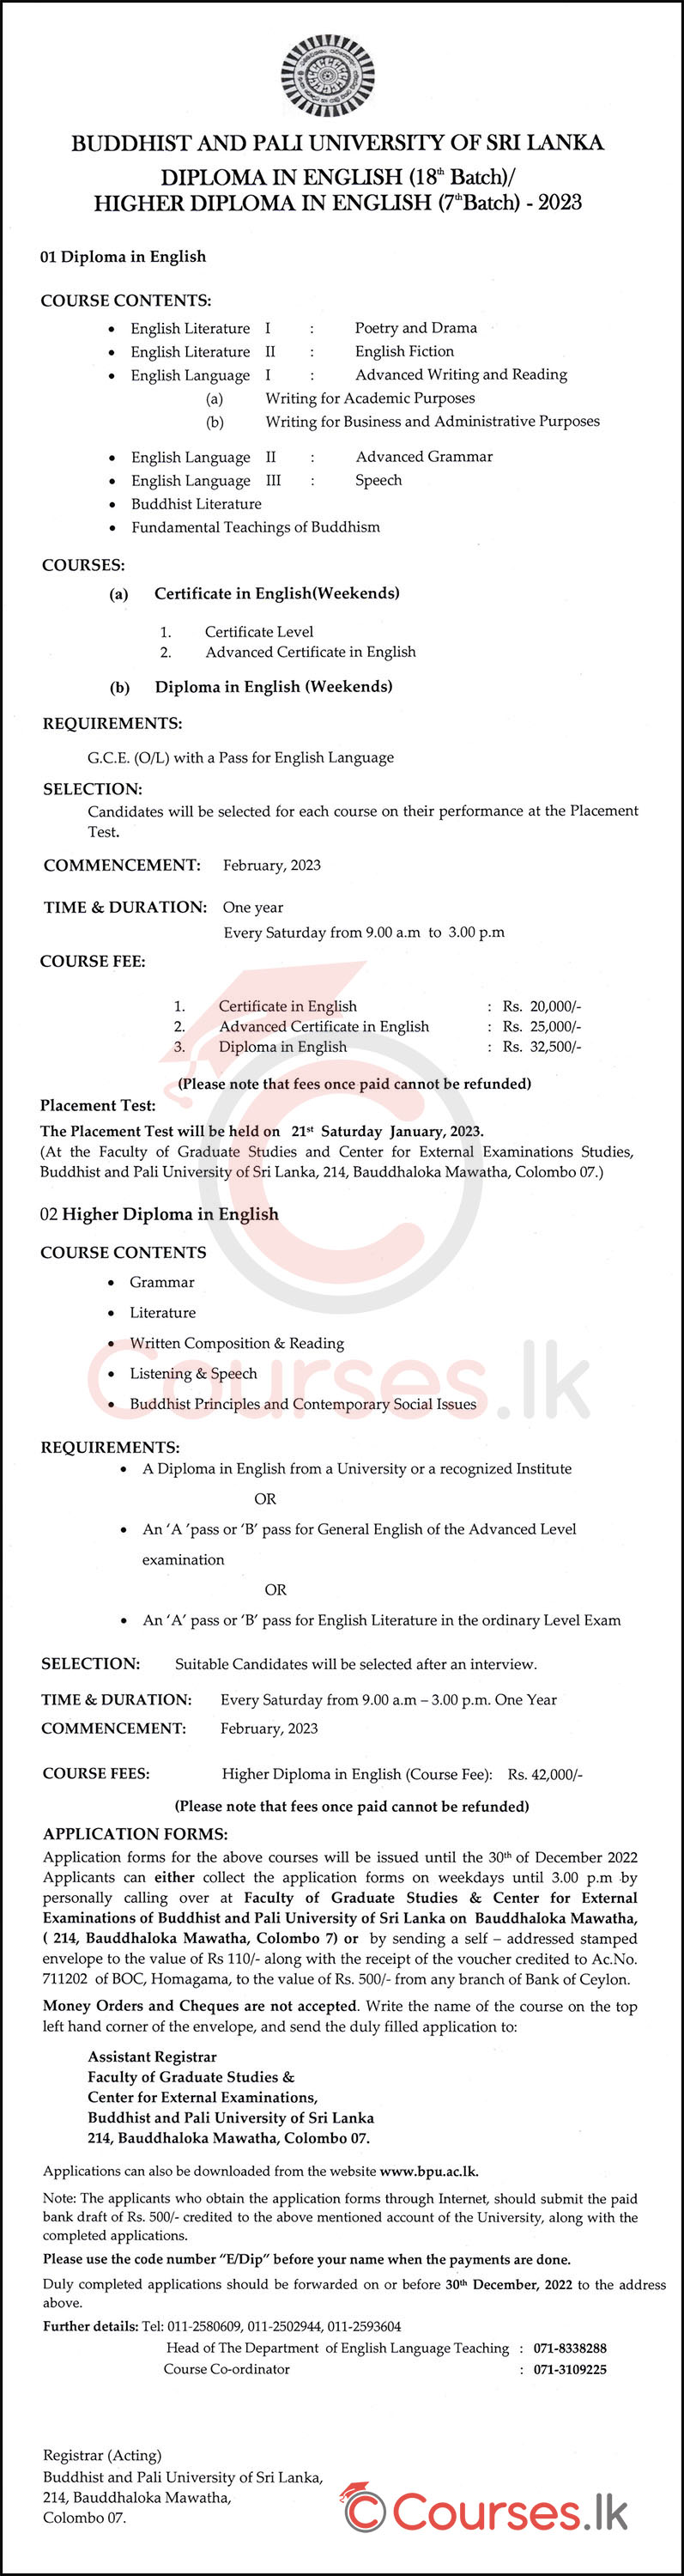 English Language Courses (Diploma & Certificate) 2022/2023 - Buddhist and Pali University of Sri Lanka